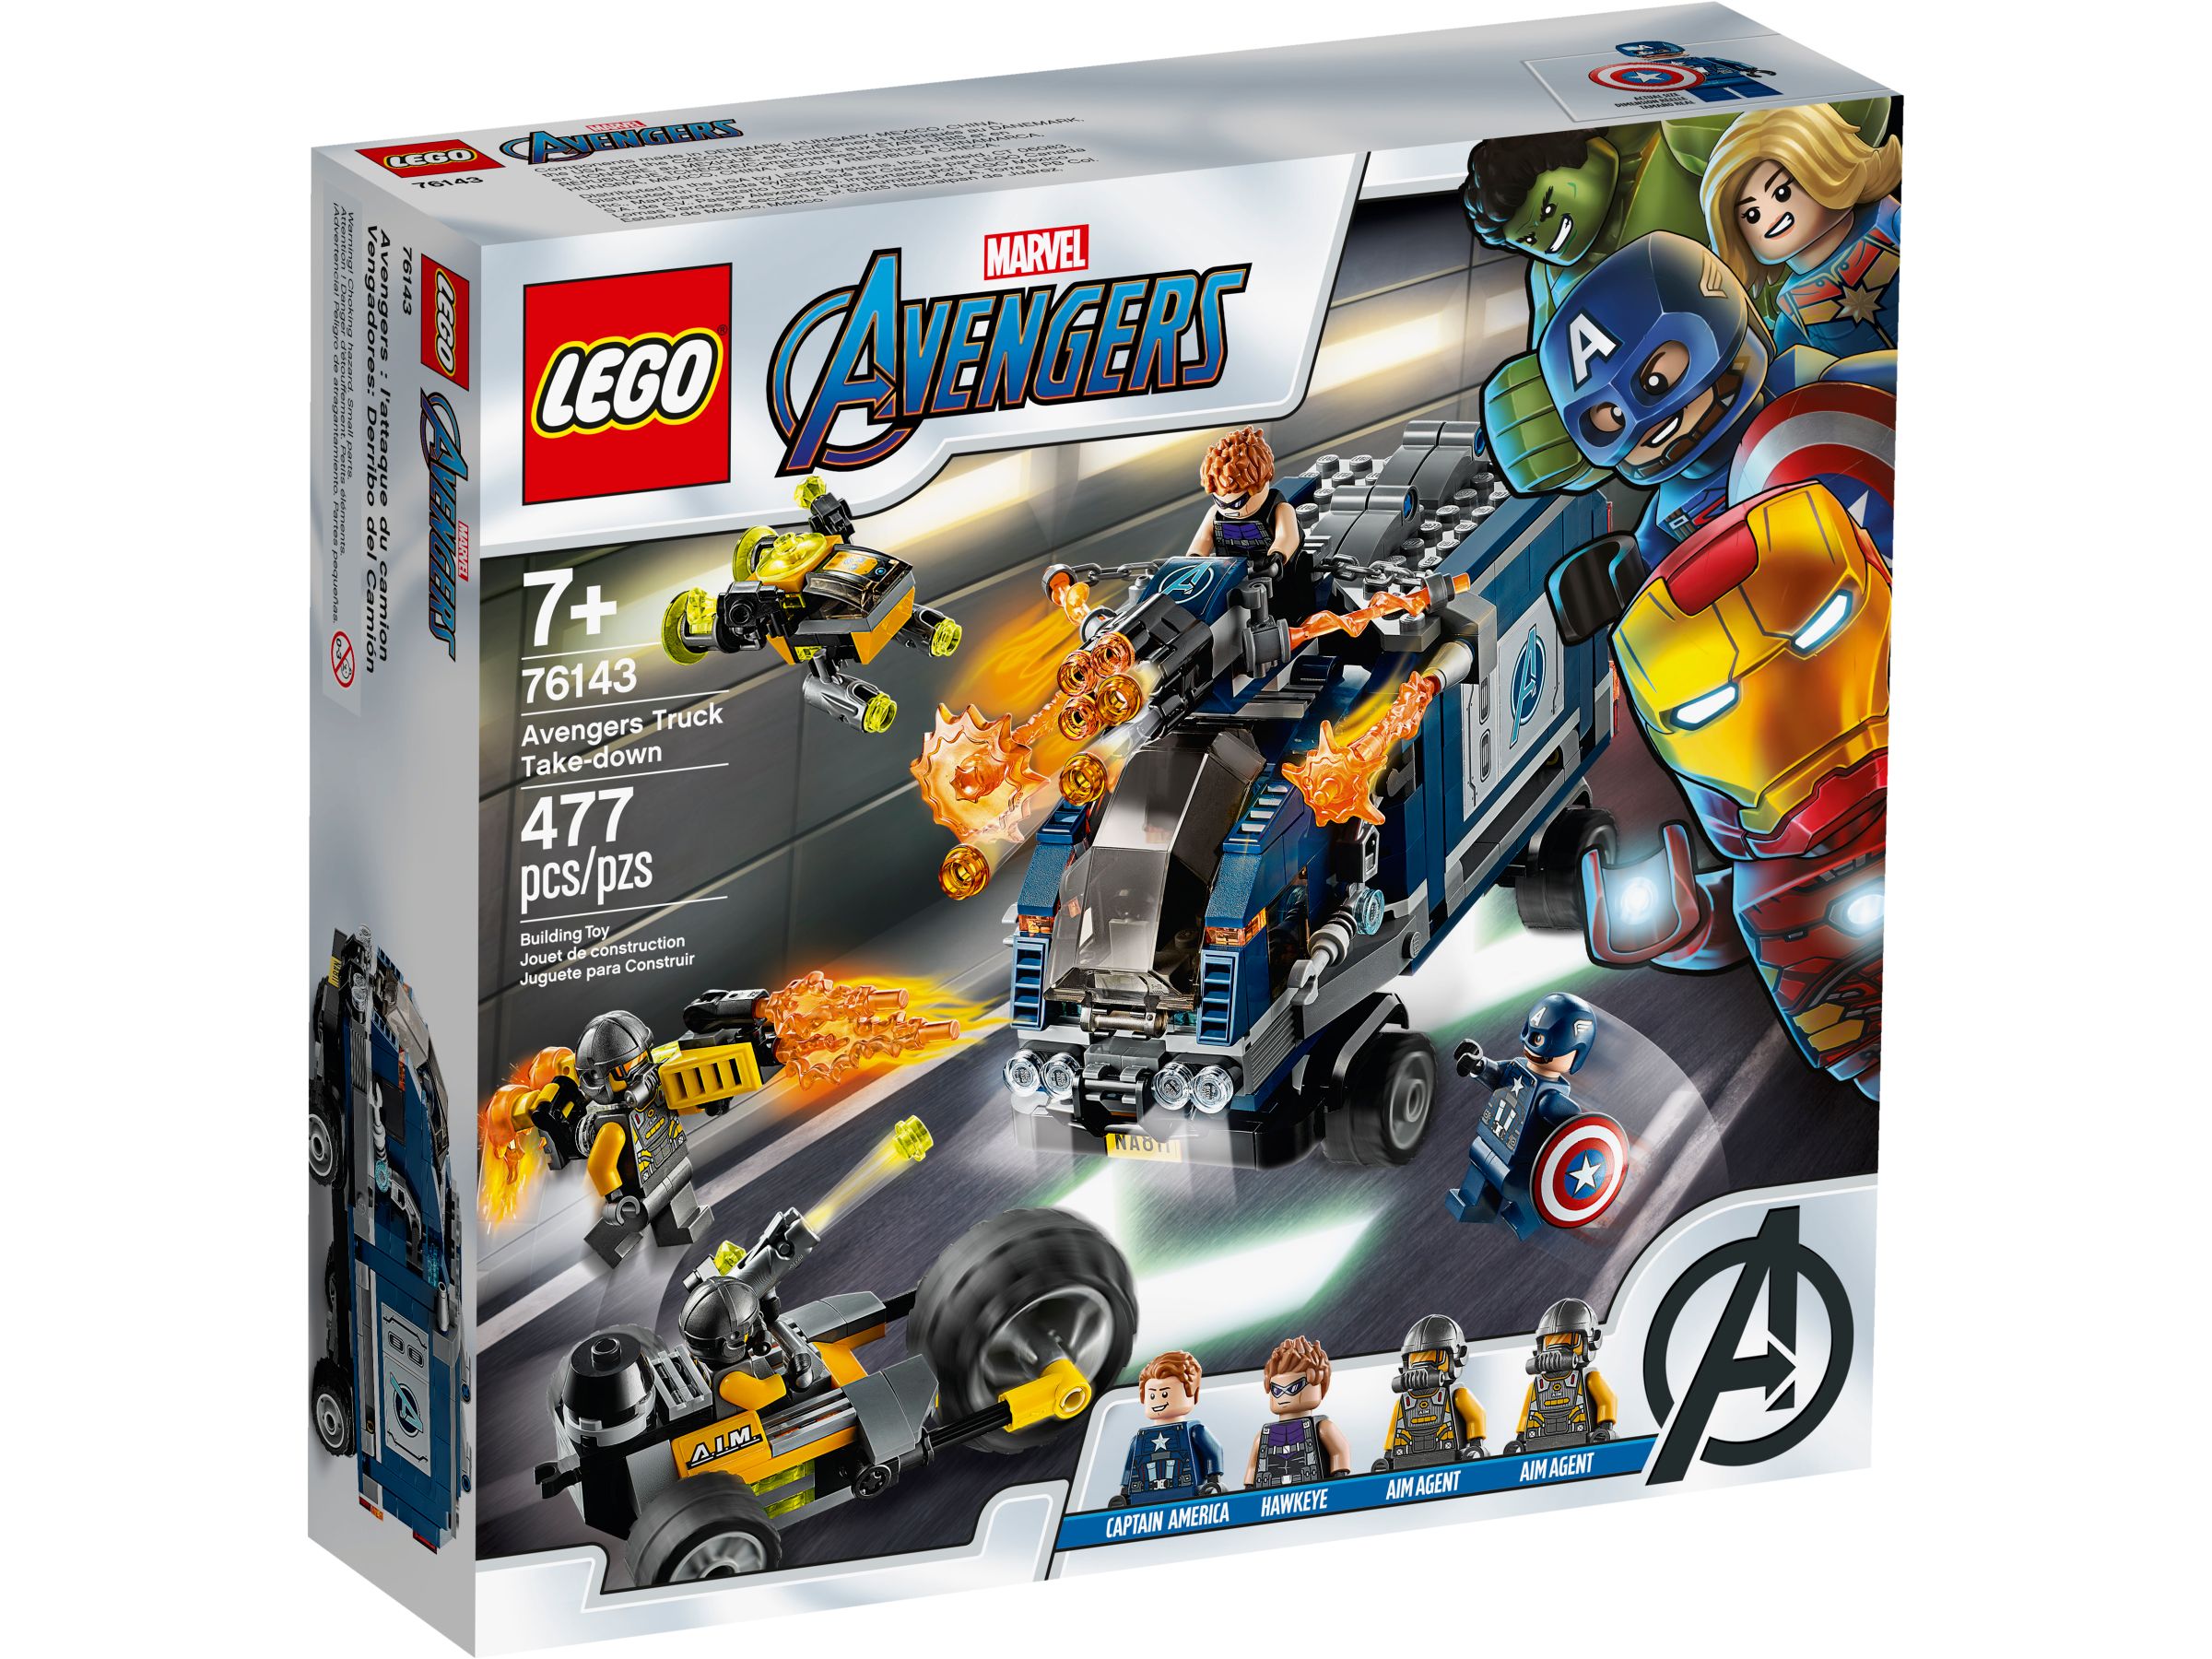 LEGO Super Heroes 76143 Avengers Truck-Festnahme LEGO_76143_alt1.jpg